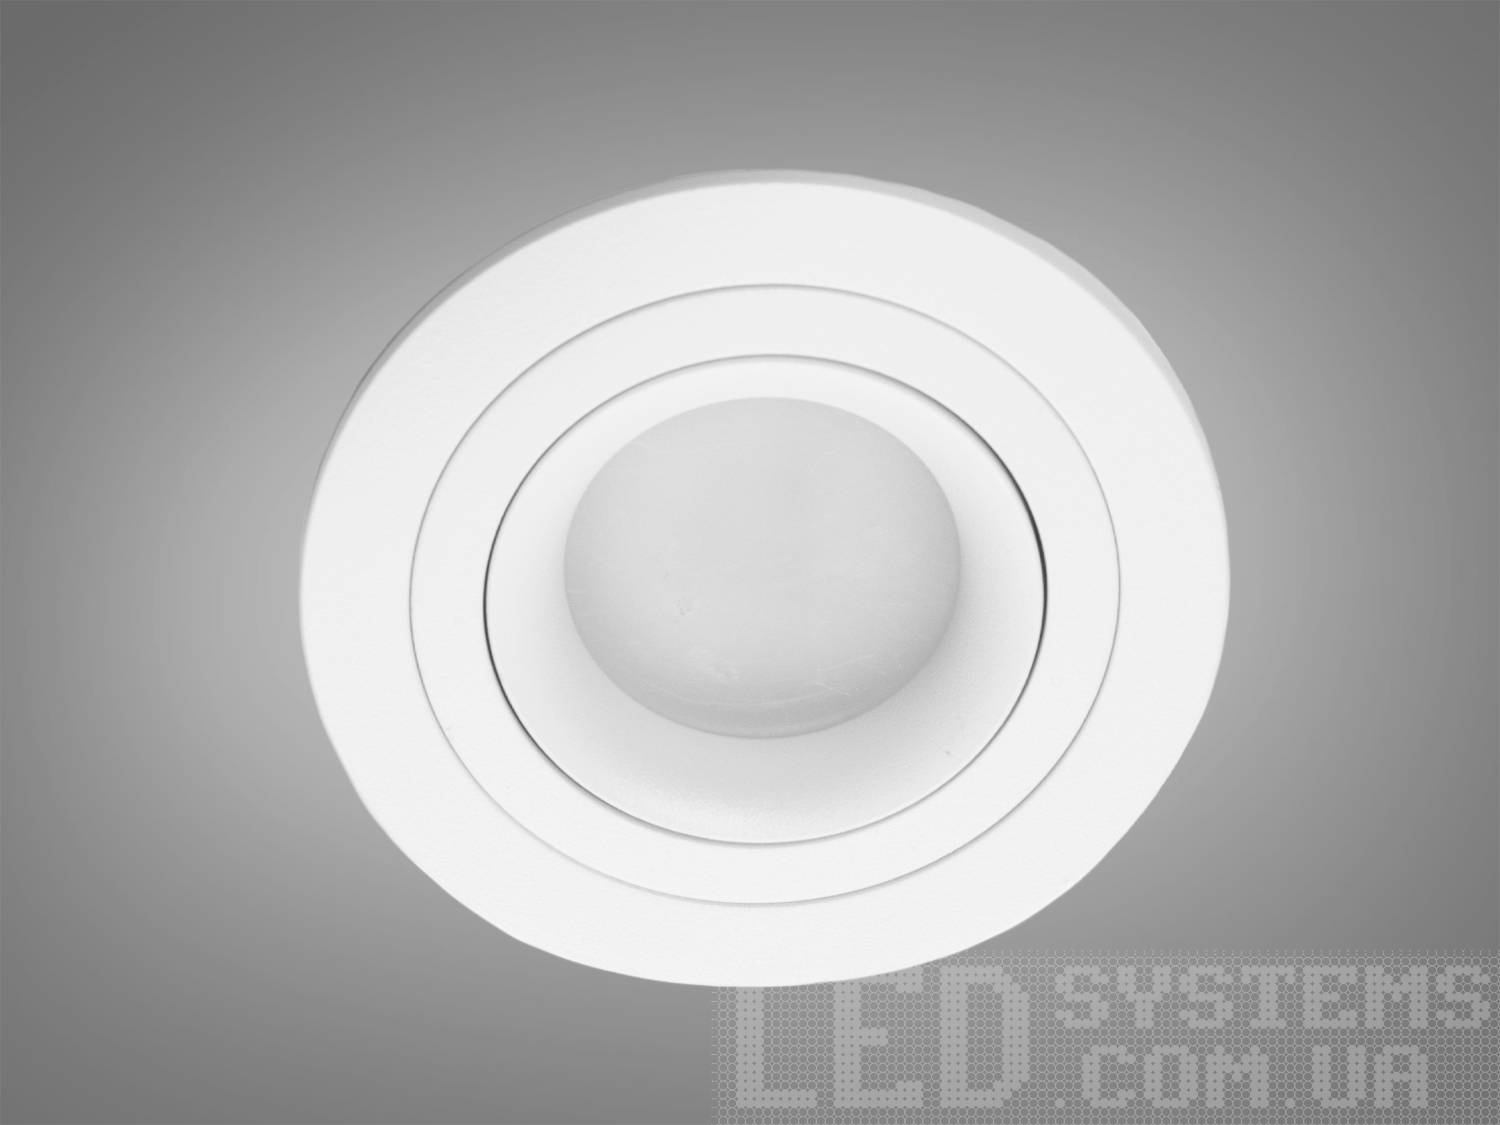 Нова серія точкових світильників дозволить зробити Вашу квартиру стильною та сучасною. Дані світильники ідеально підходять для світлодіодних ламп, які забезпечують найкращі параметри освітлення та енергозбереження, дозволяючи дизайнеру інтер'єру можливість для креативу. 
Точковий світильник - це спеціальний вбудований світильник, який використовується для спрямованого або загального підсвічування певних ділянок Вашої квартири. Їх застосовують на кухні, у ванній кімнаті, для освітлення сходів та у житлових кімнатах. При рівномірному розподілі різних джерел світла (наприклад: люстра в центрі кімнати + точкові світильники по краю стелі) ви можете досягти ефекту відсутності тіні і зорово збільшити простір кімнати. Куди б Ви не подивилися, точкові світильники будуть гарно освітлювати простір перед Вами та всі предмети, що Вас оточують. 
Алюмінієві світильники не схильні до корозії, добре відводять тепло від лампи. 
Лампа до комплекту не входить. 